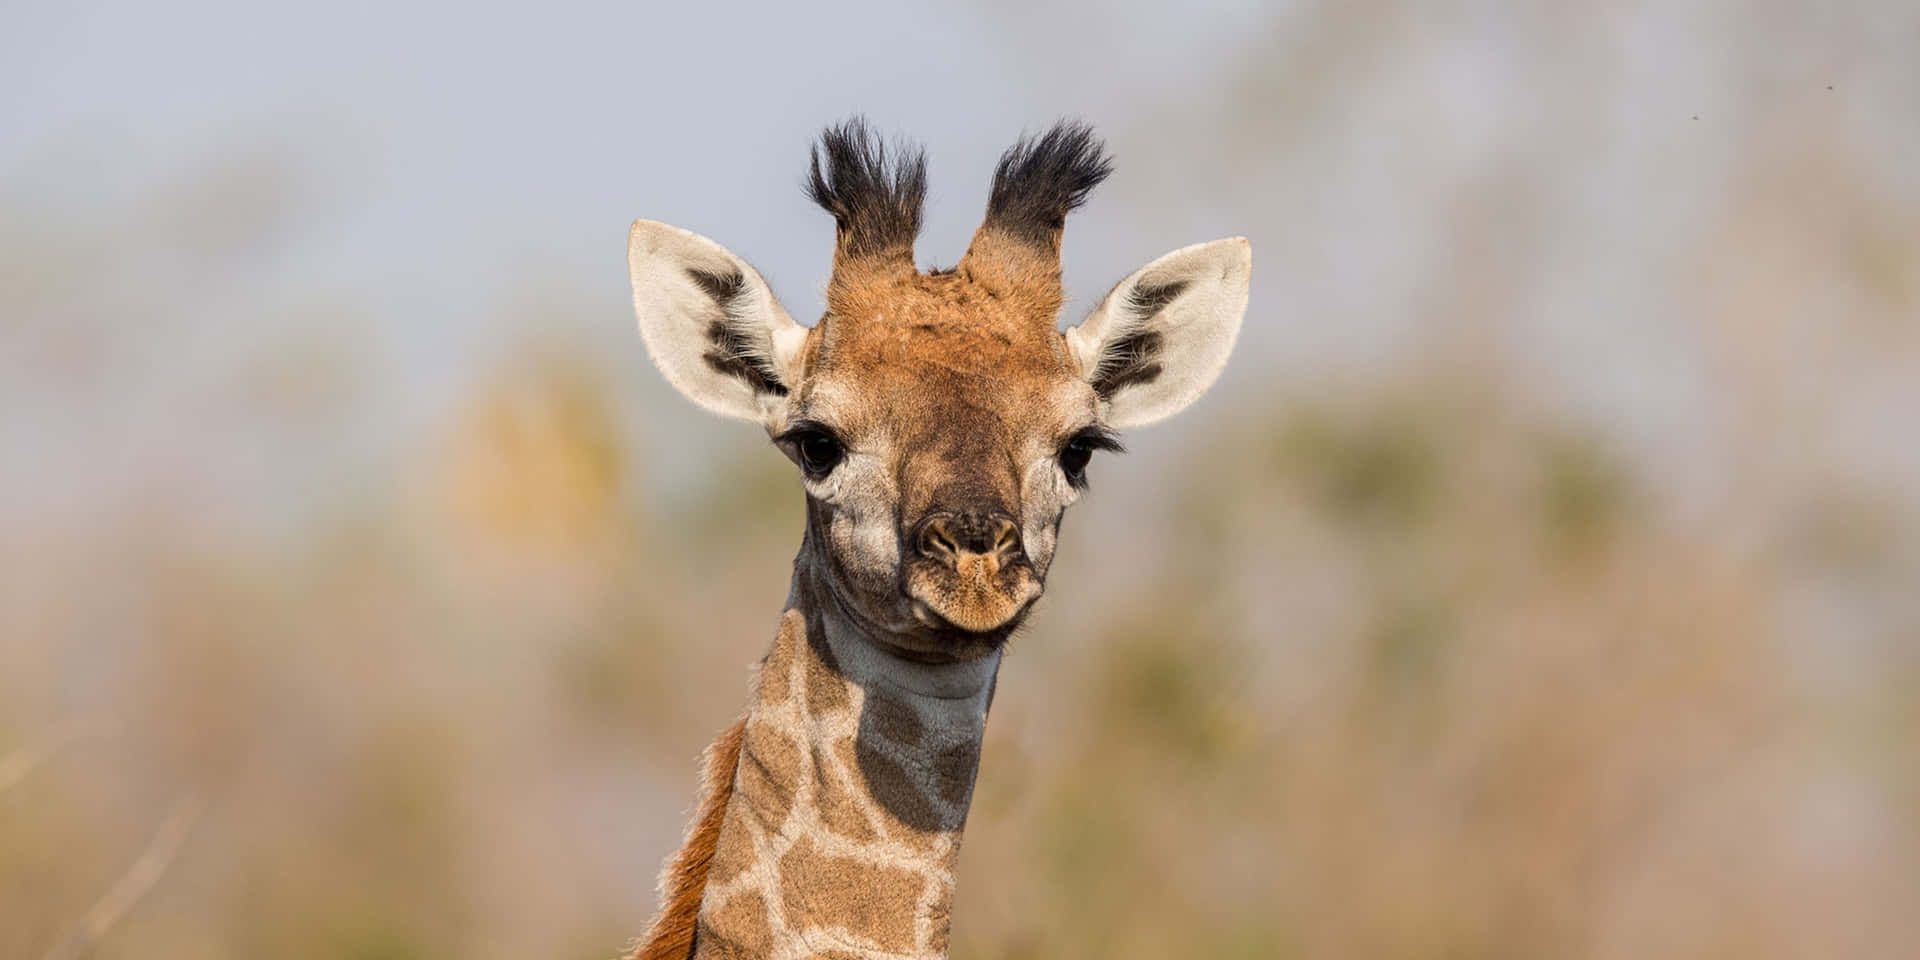 Umfilhote De Girafa Extravagante Com Um Olhar Curioso Nos Olhos